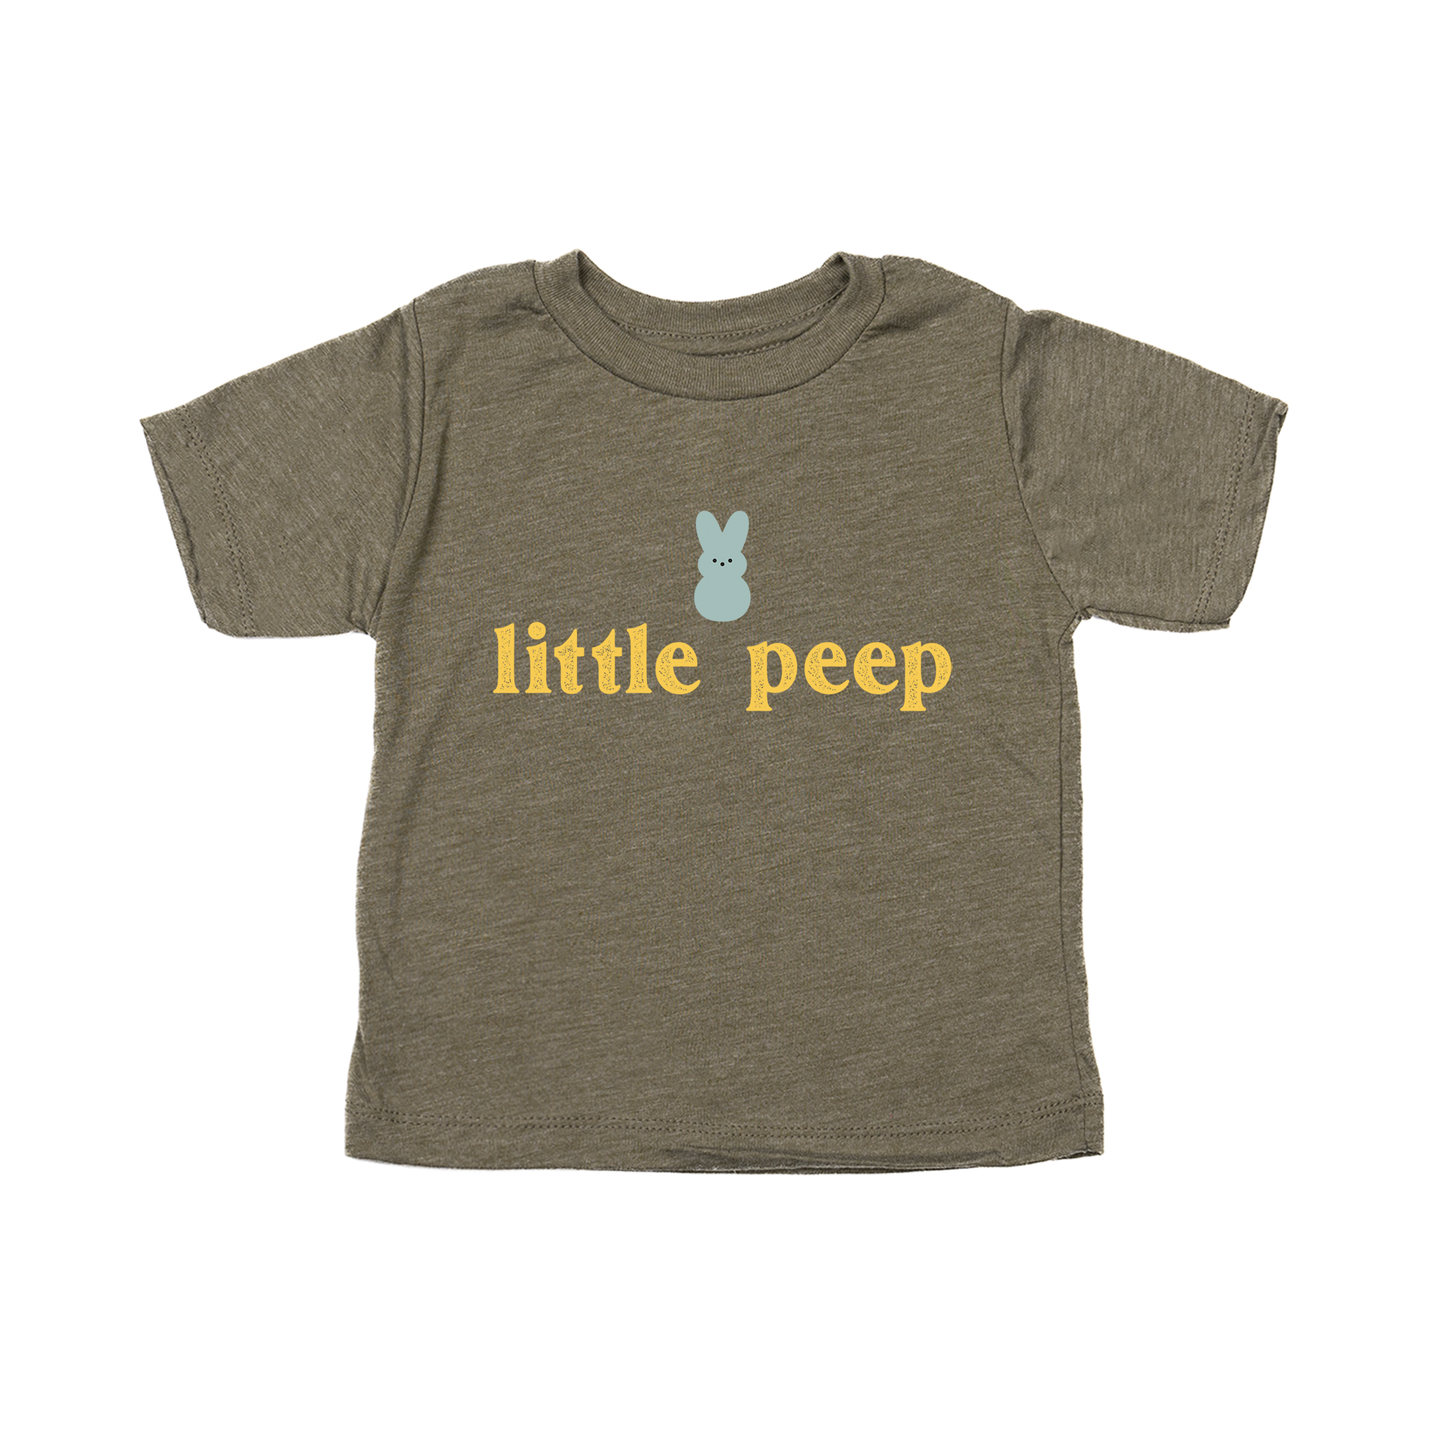 Little Peep - Kids Tee (Olive)